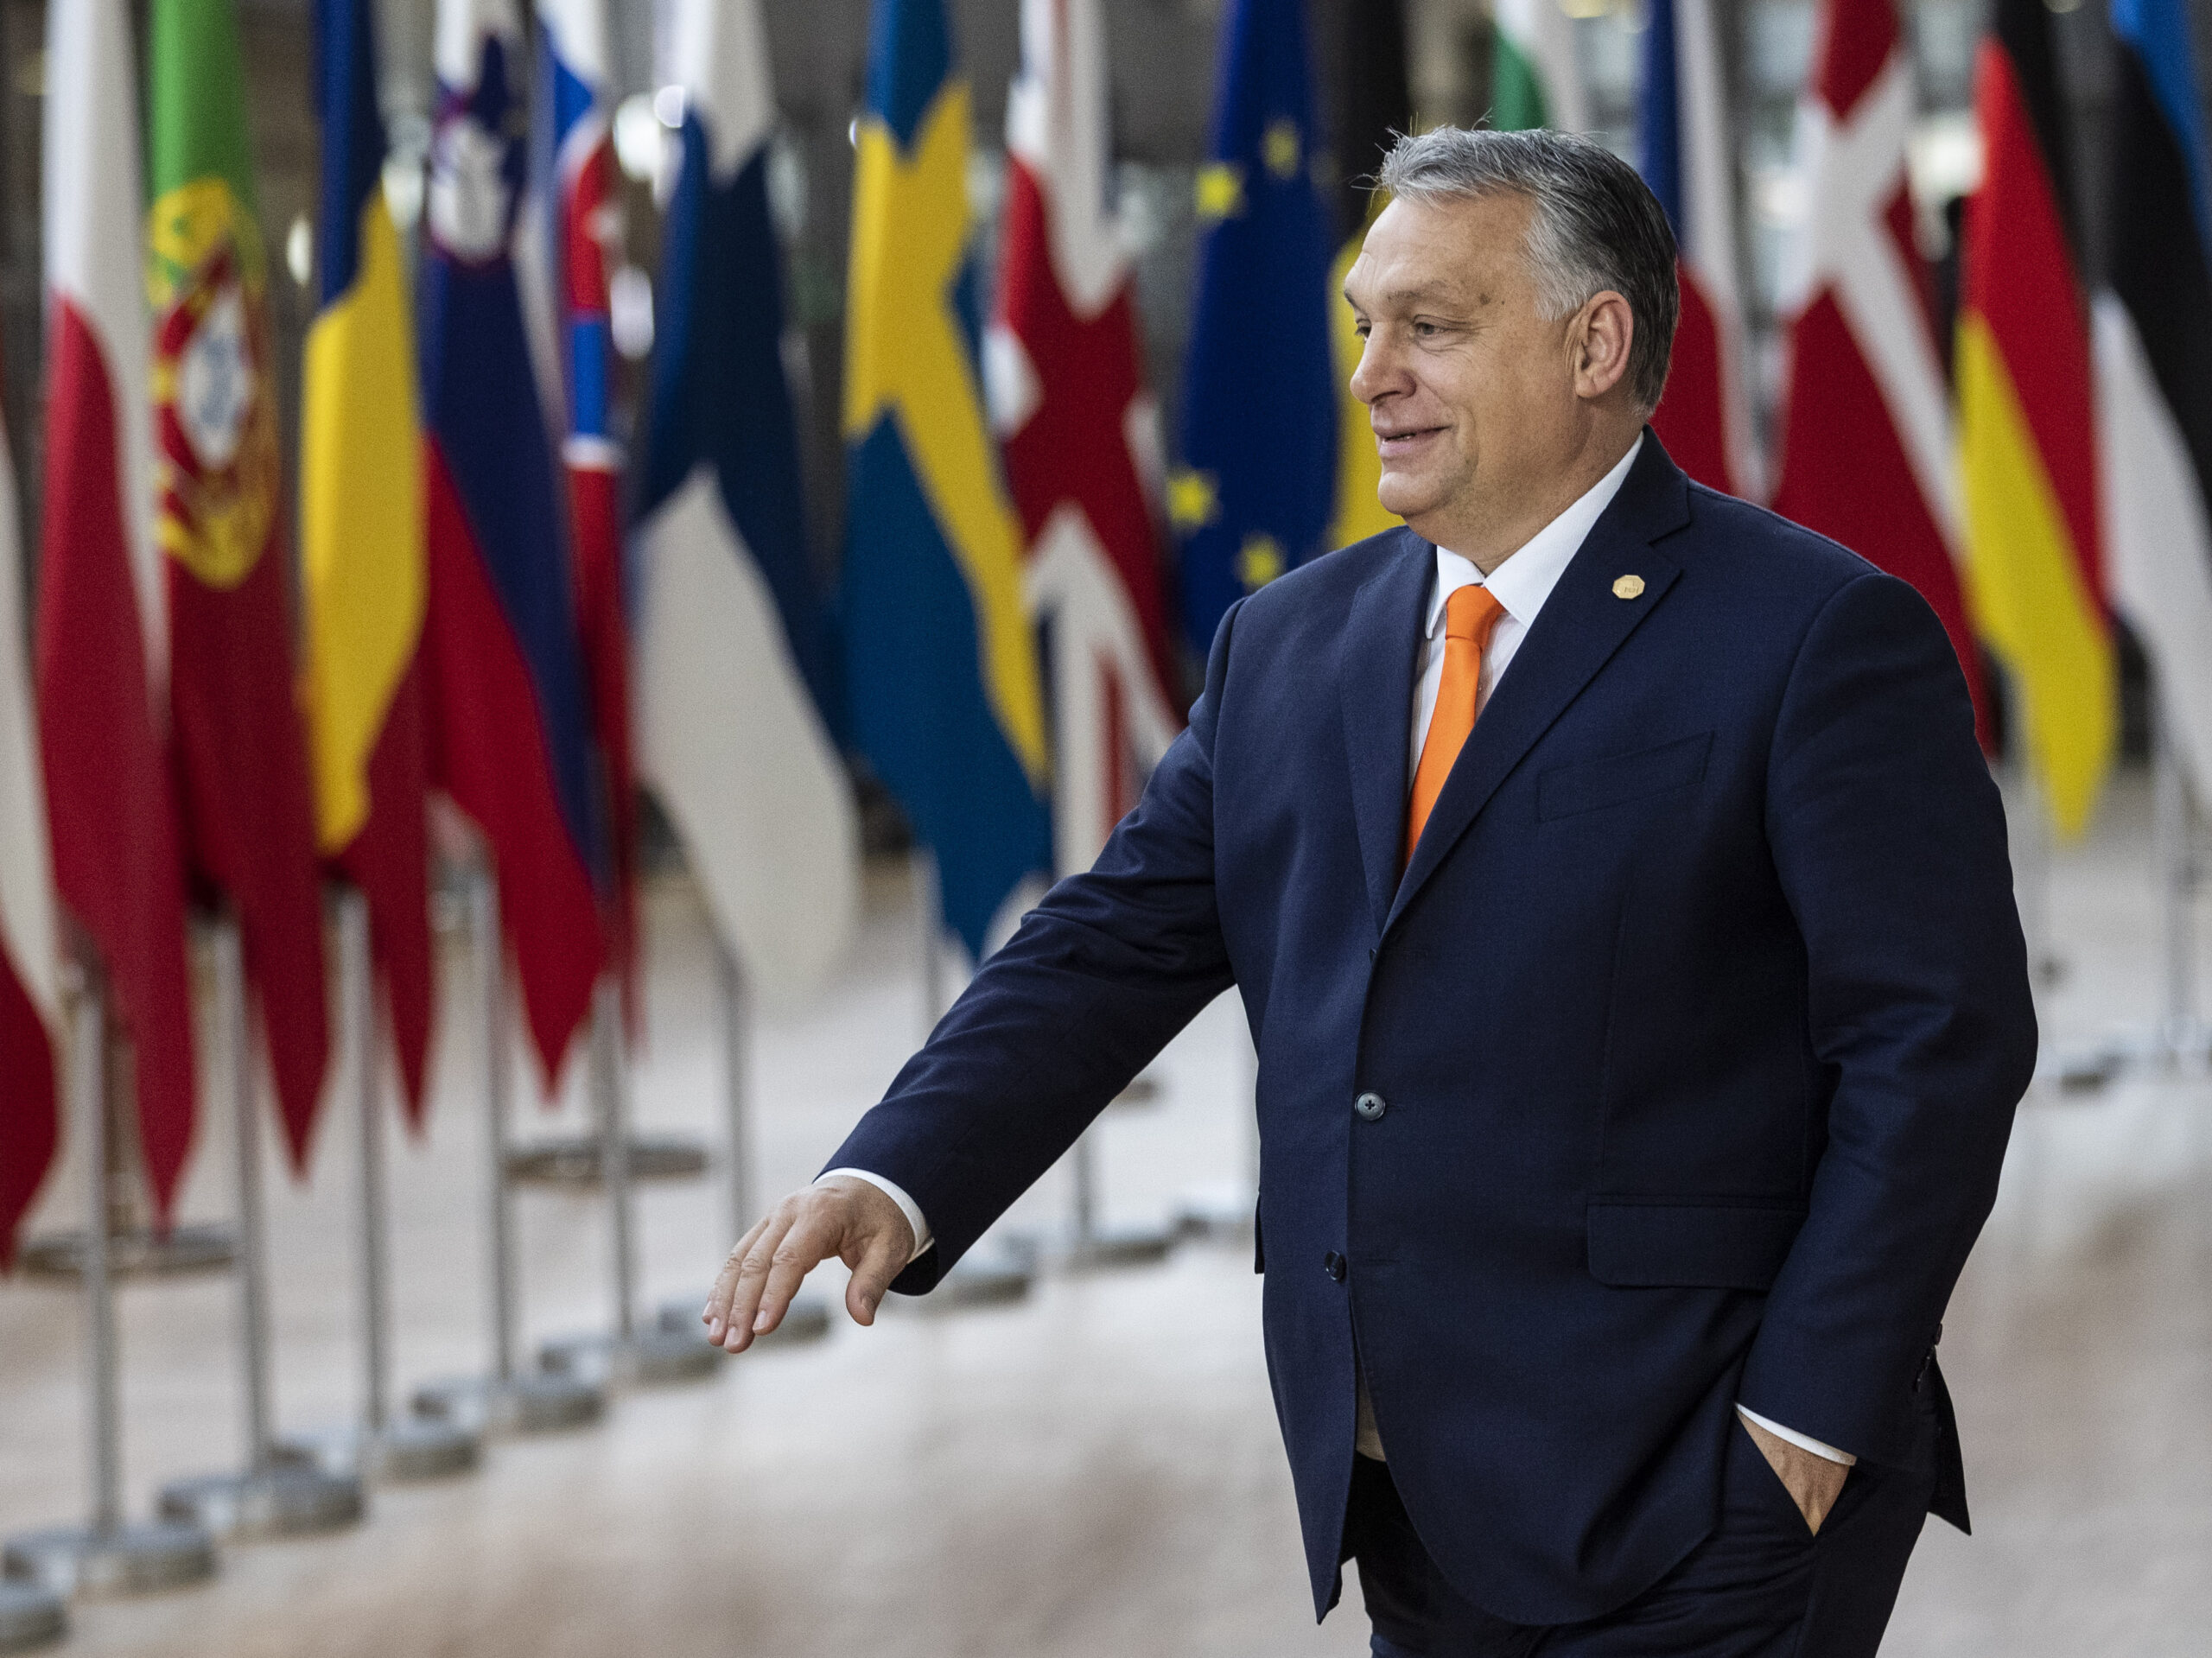 Discursul integral al lui Victor Orban care face înconjurul lumii – Adevăruri incomode spuse la Tușland